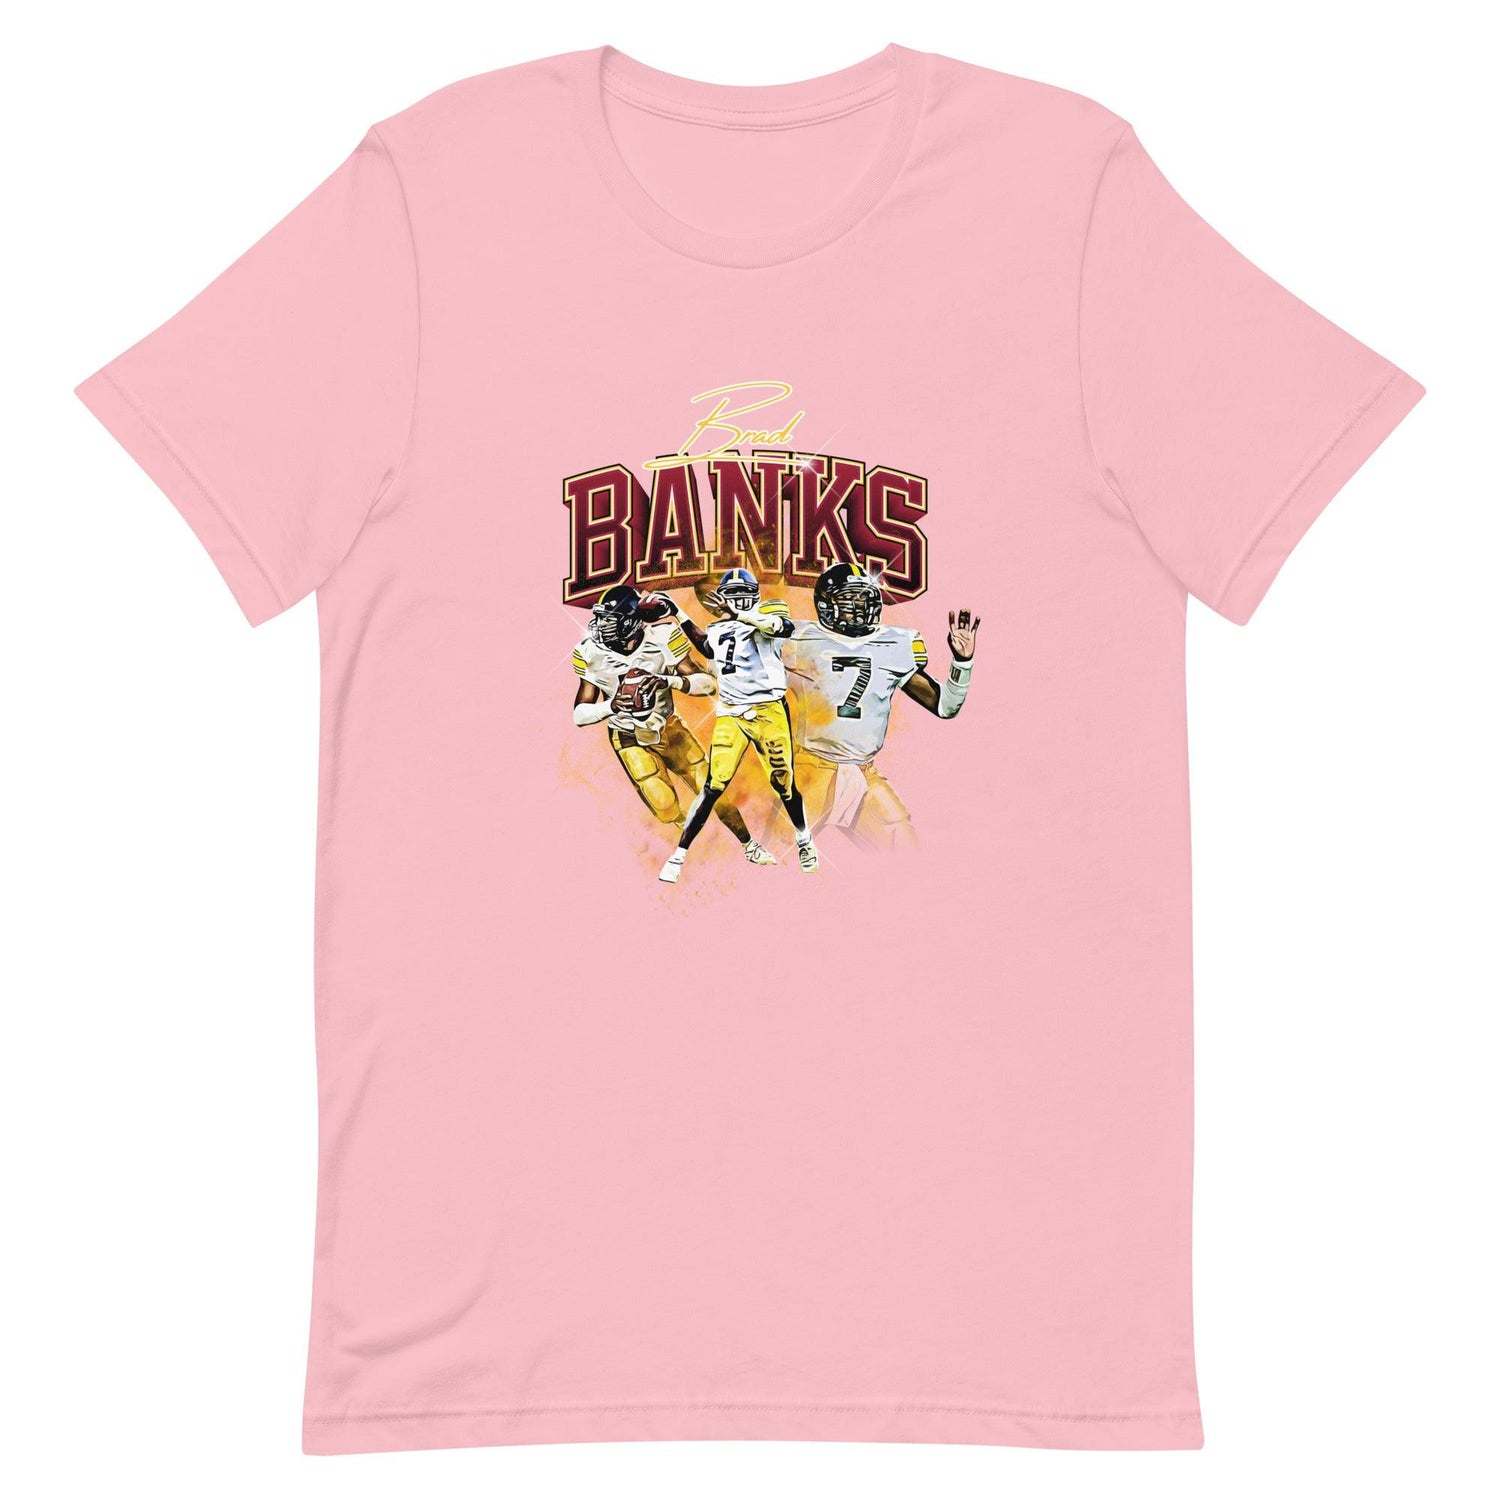 Brad Banks "Vintage" t-shirt - Fan Arch